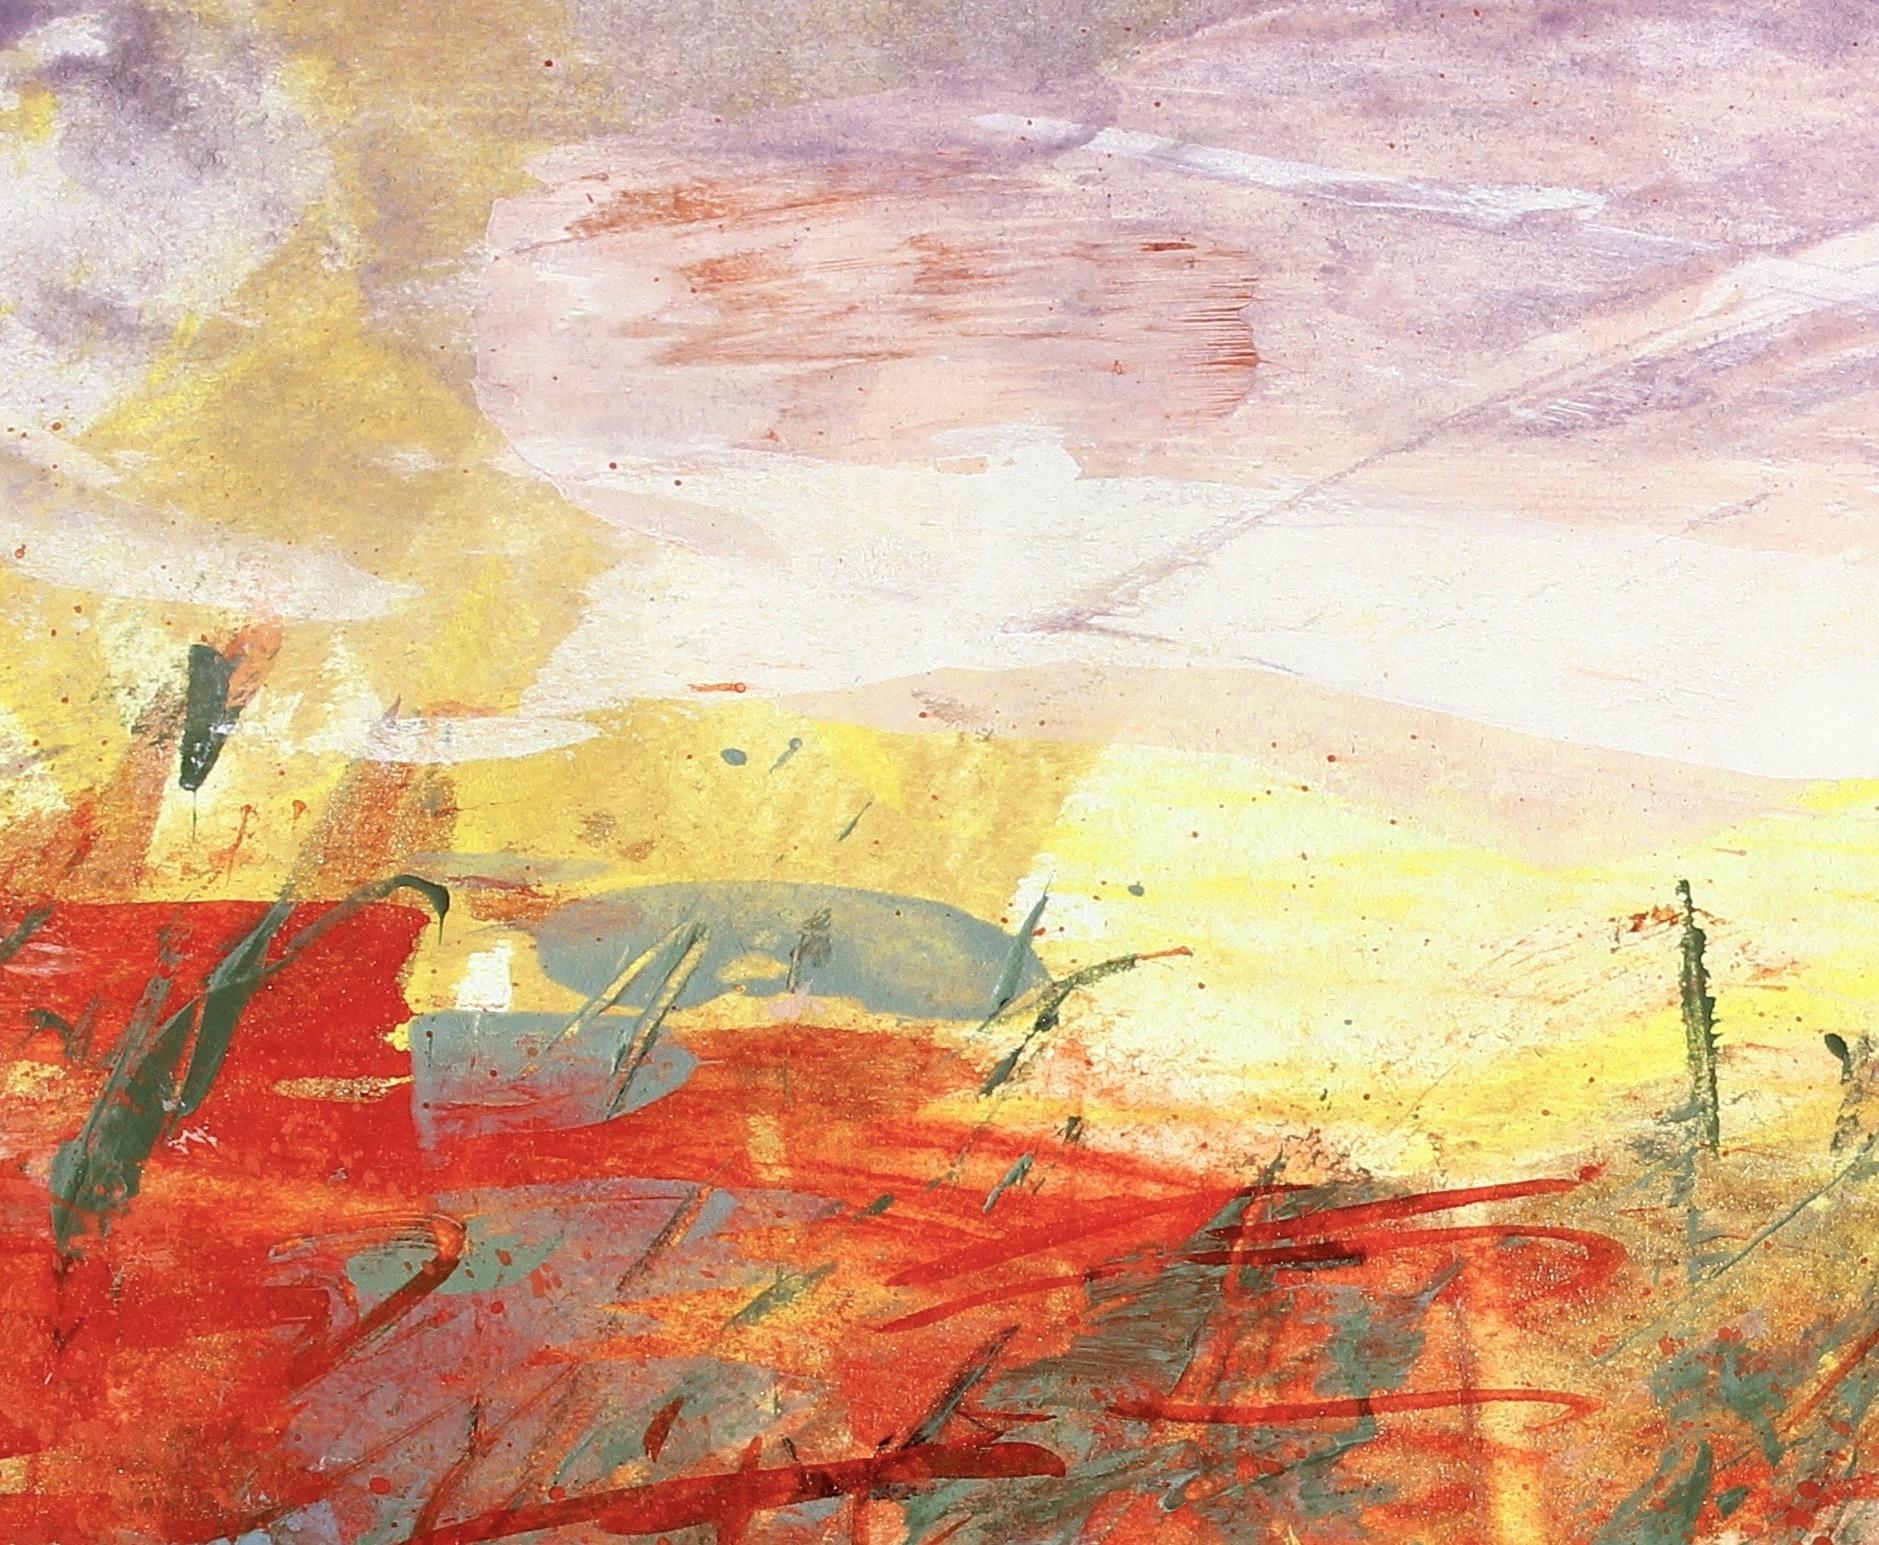 Paysage désertique n°4, peinture de paysage expressionniste abstrait contemporaine signée - Painting de Simona Gocan